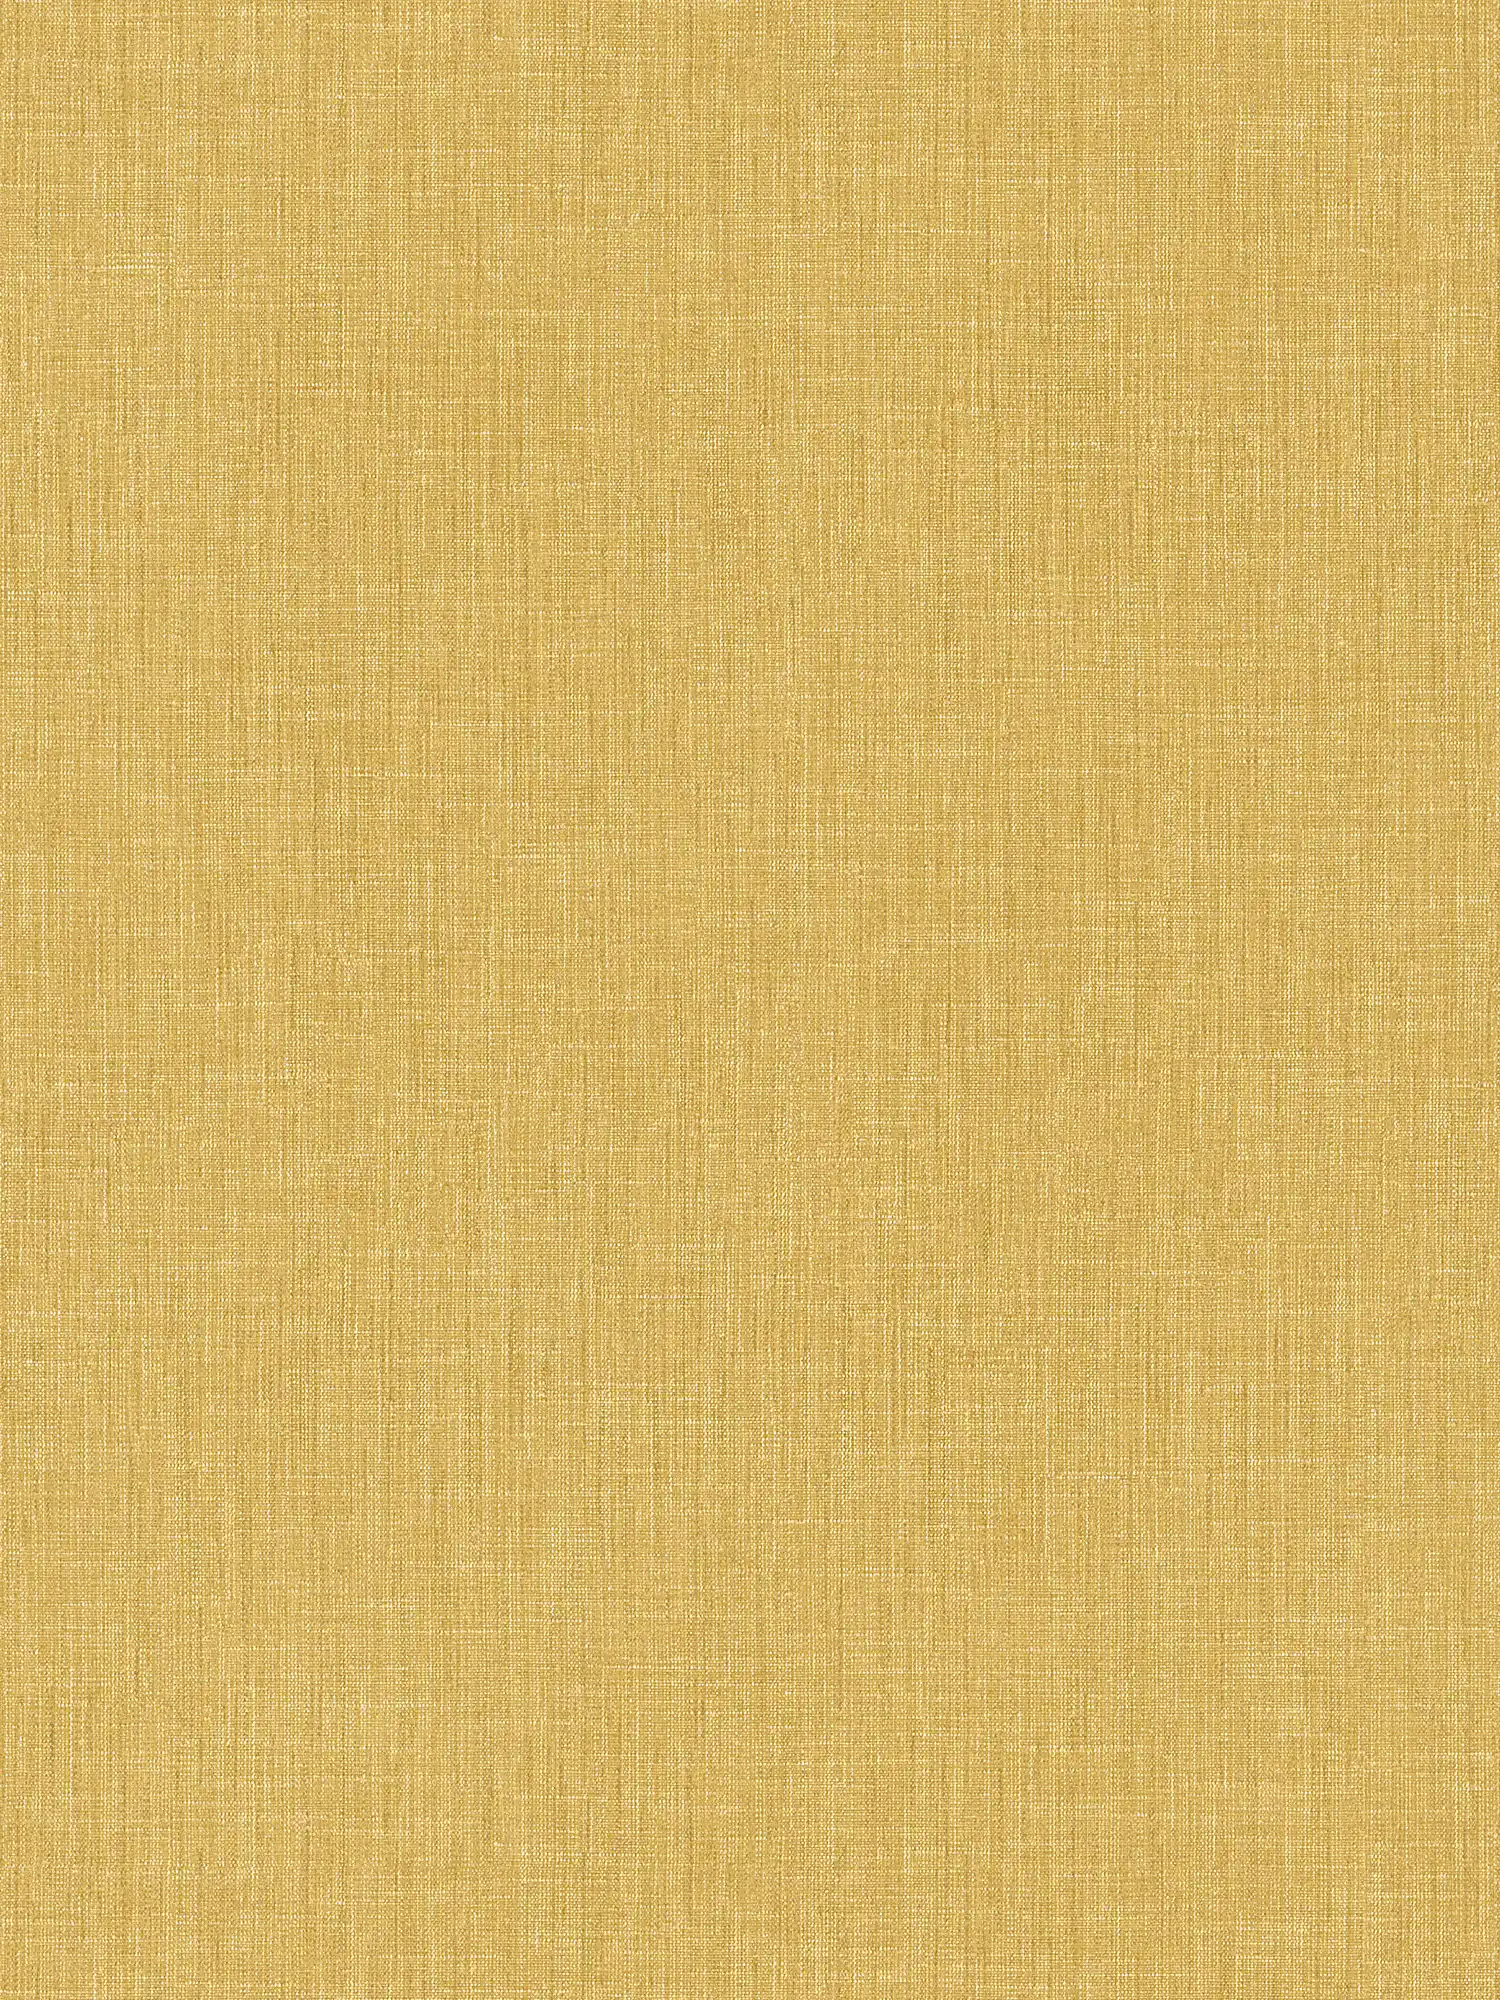 Papel pintado liso con estructura textil - amarillo
